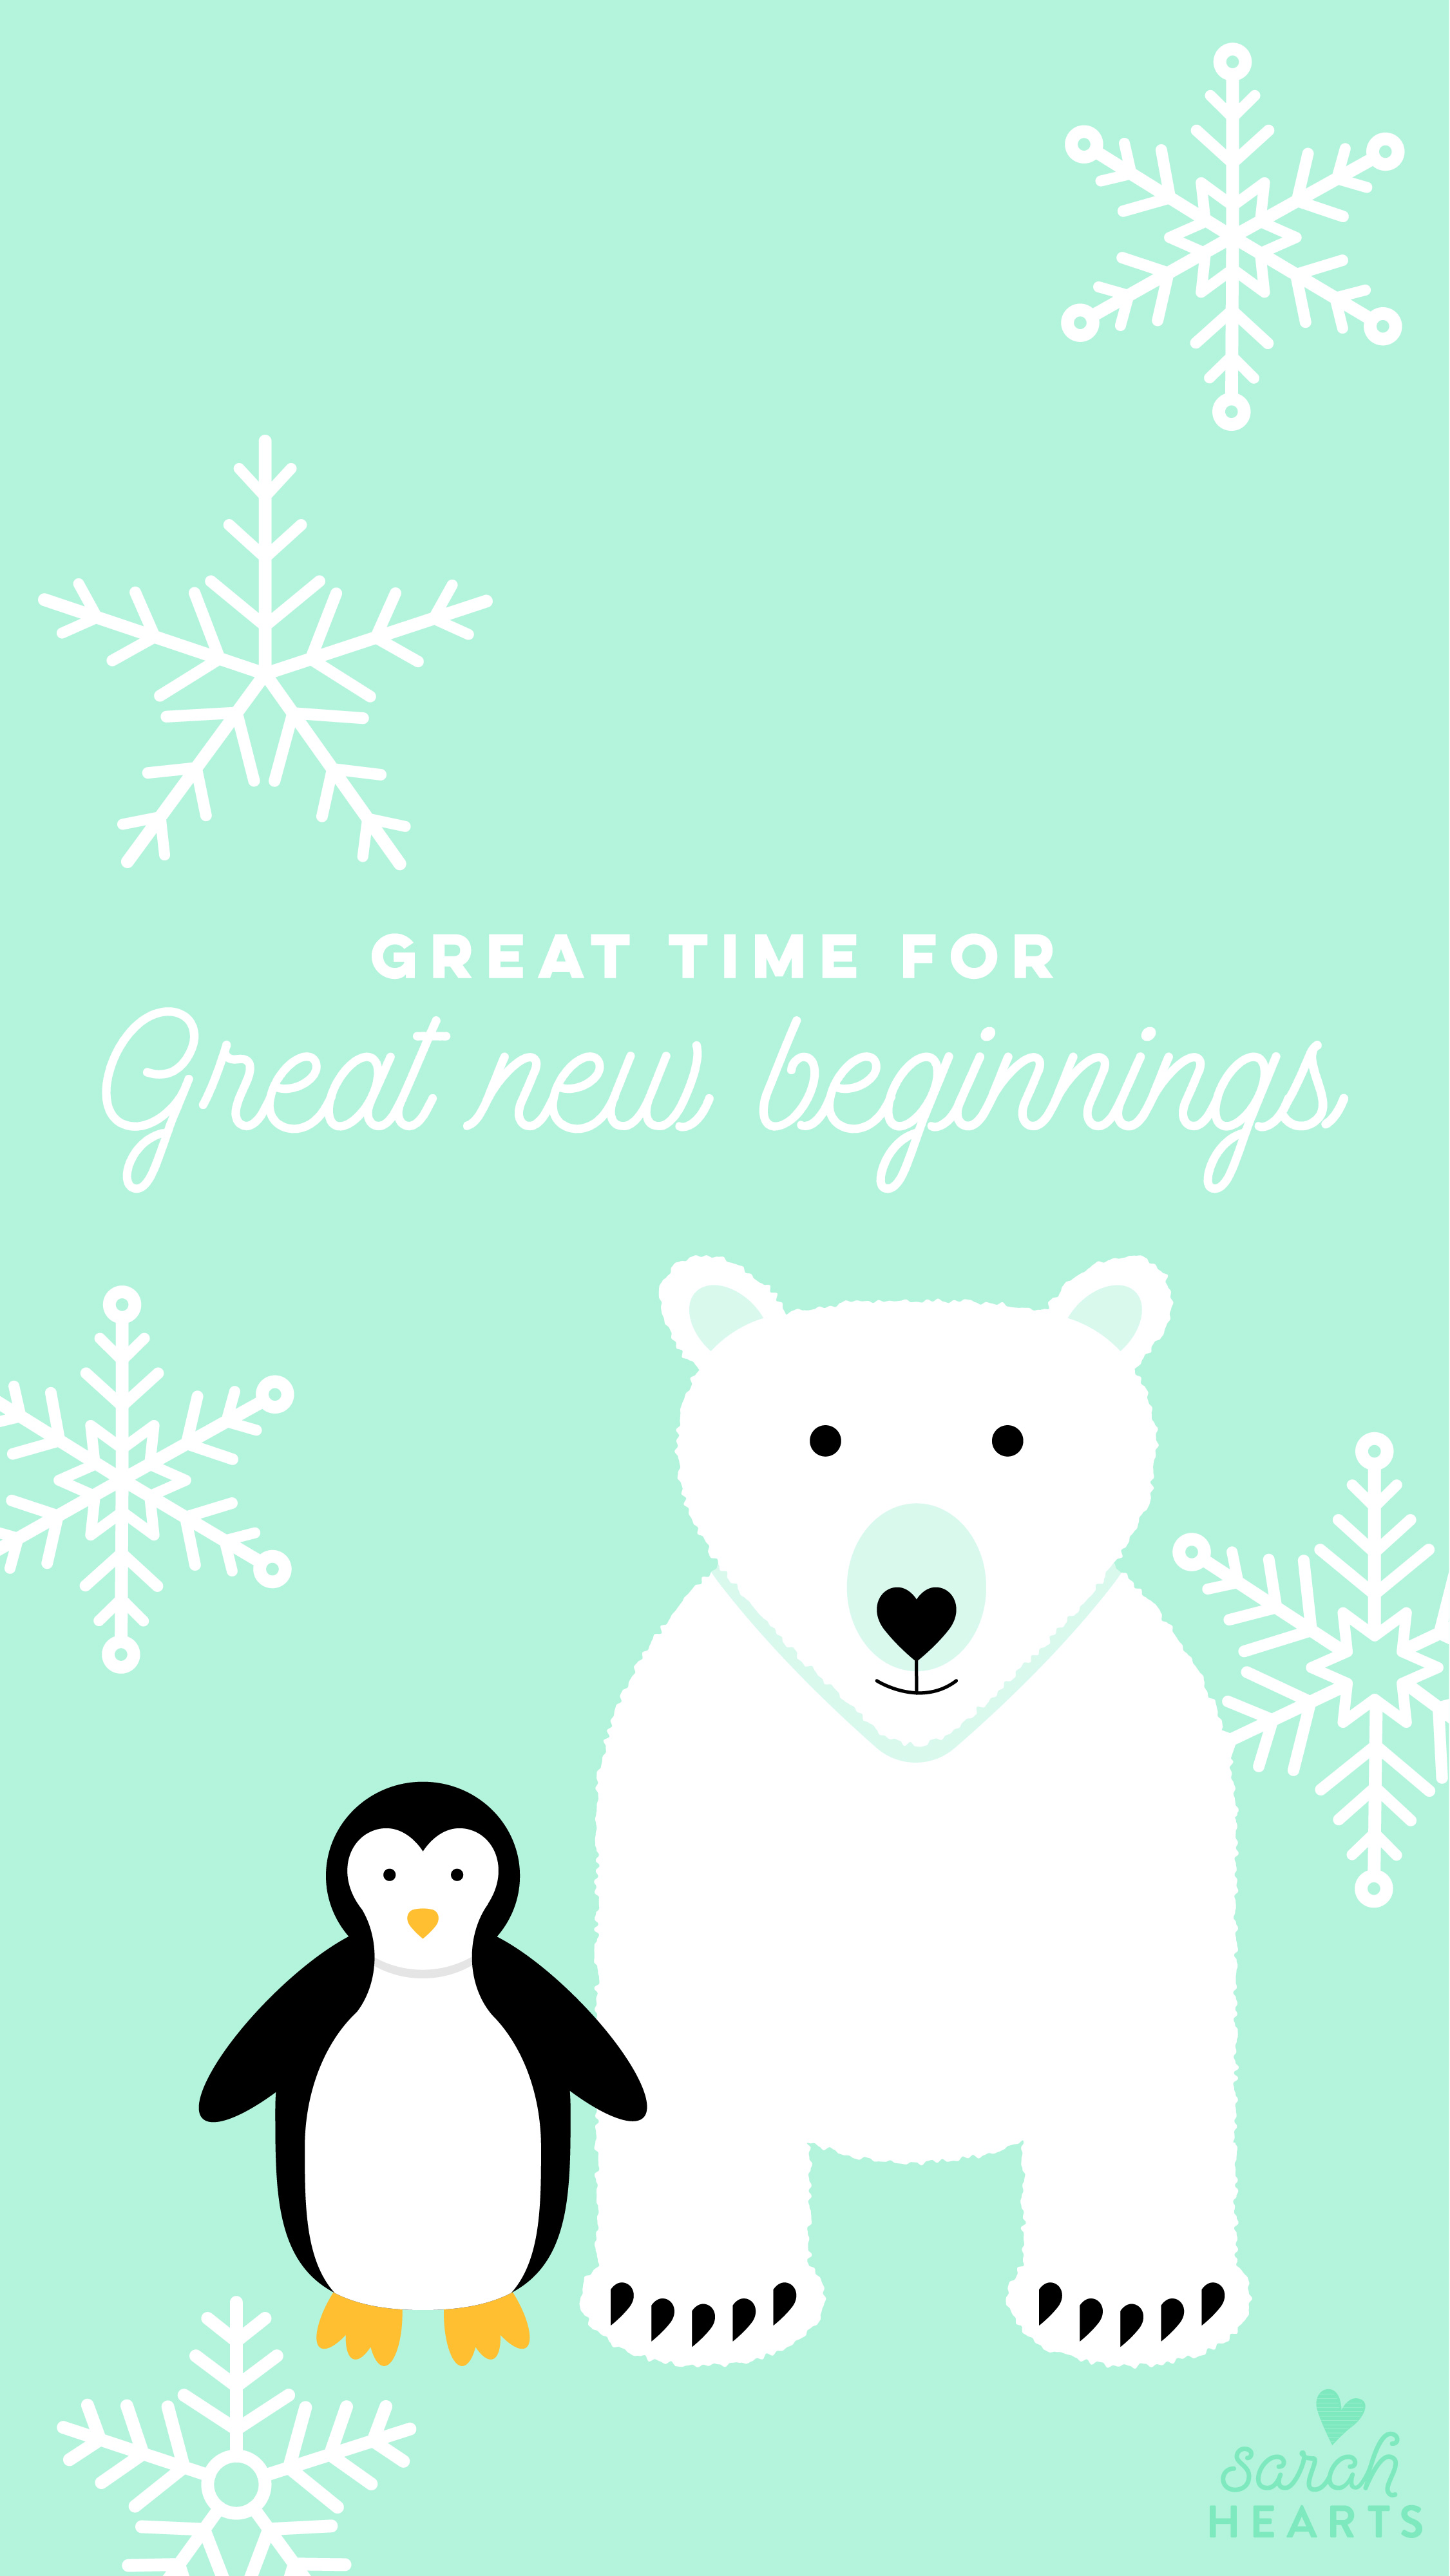 Polar Bear and Penguin January 2018 Calendar Wallpaper - Sarah Hearts